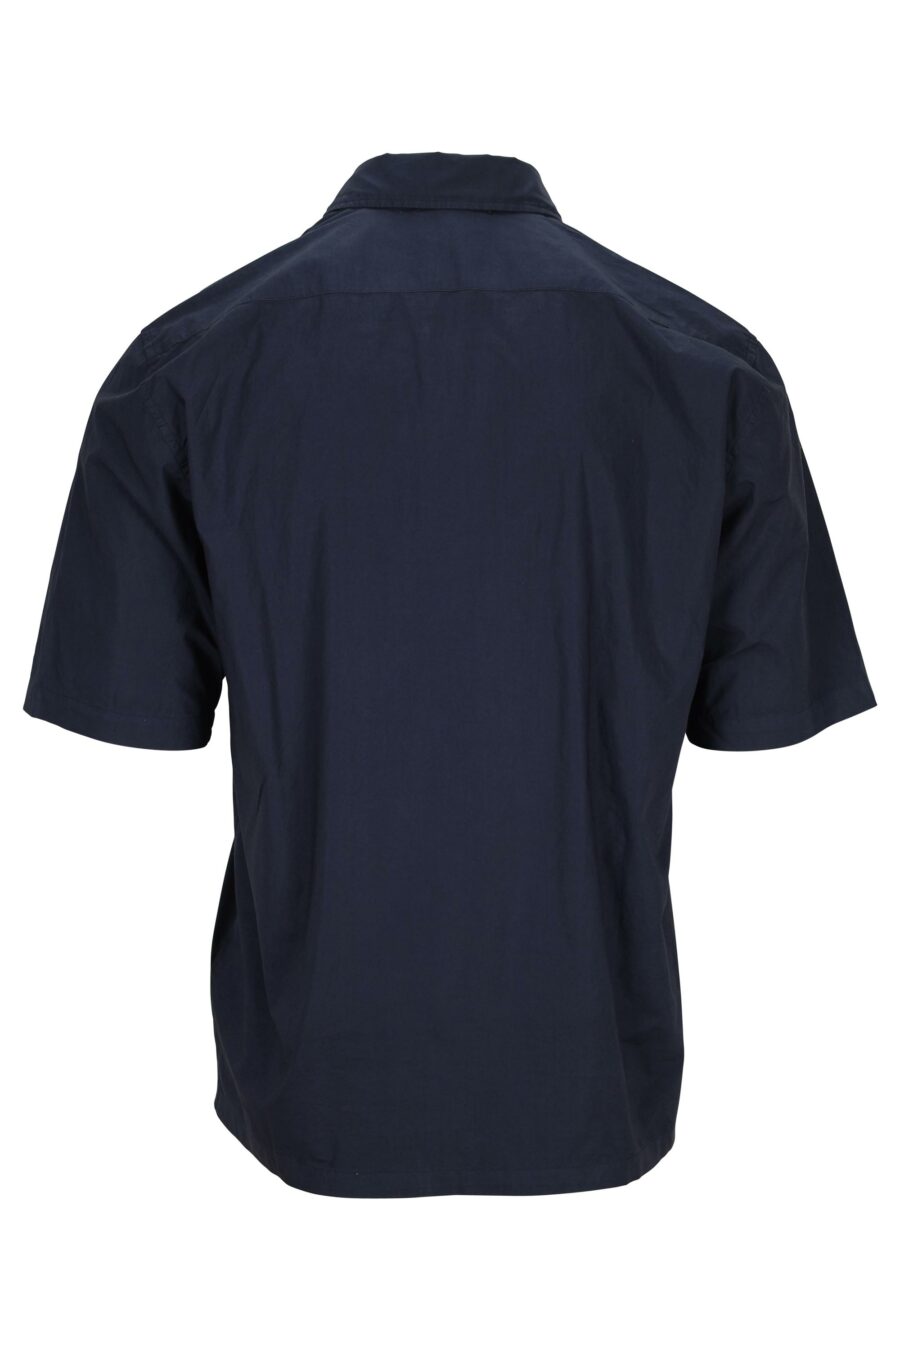 Chemise à manches courtes bleu foncé avec poche et mini-logo - 7620943811551 1